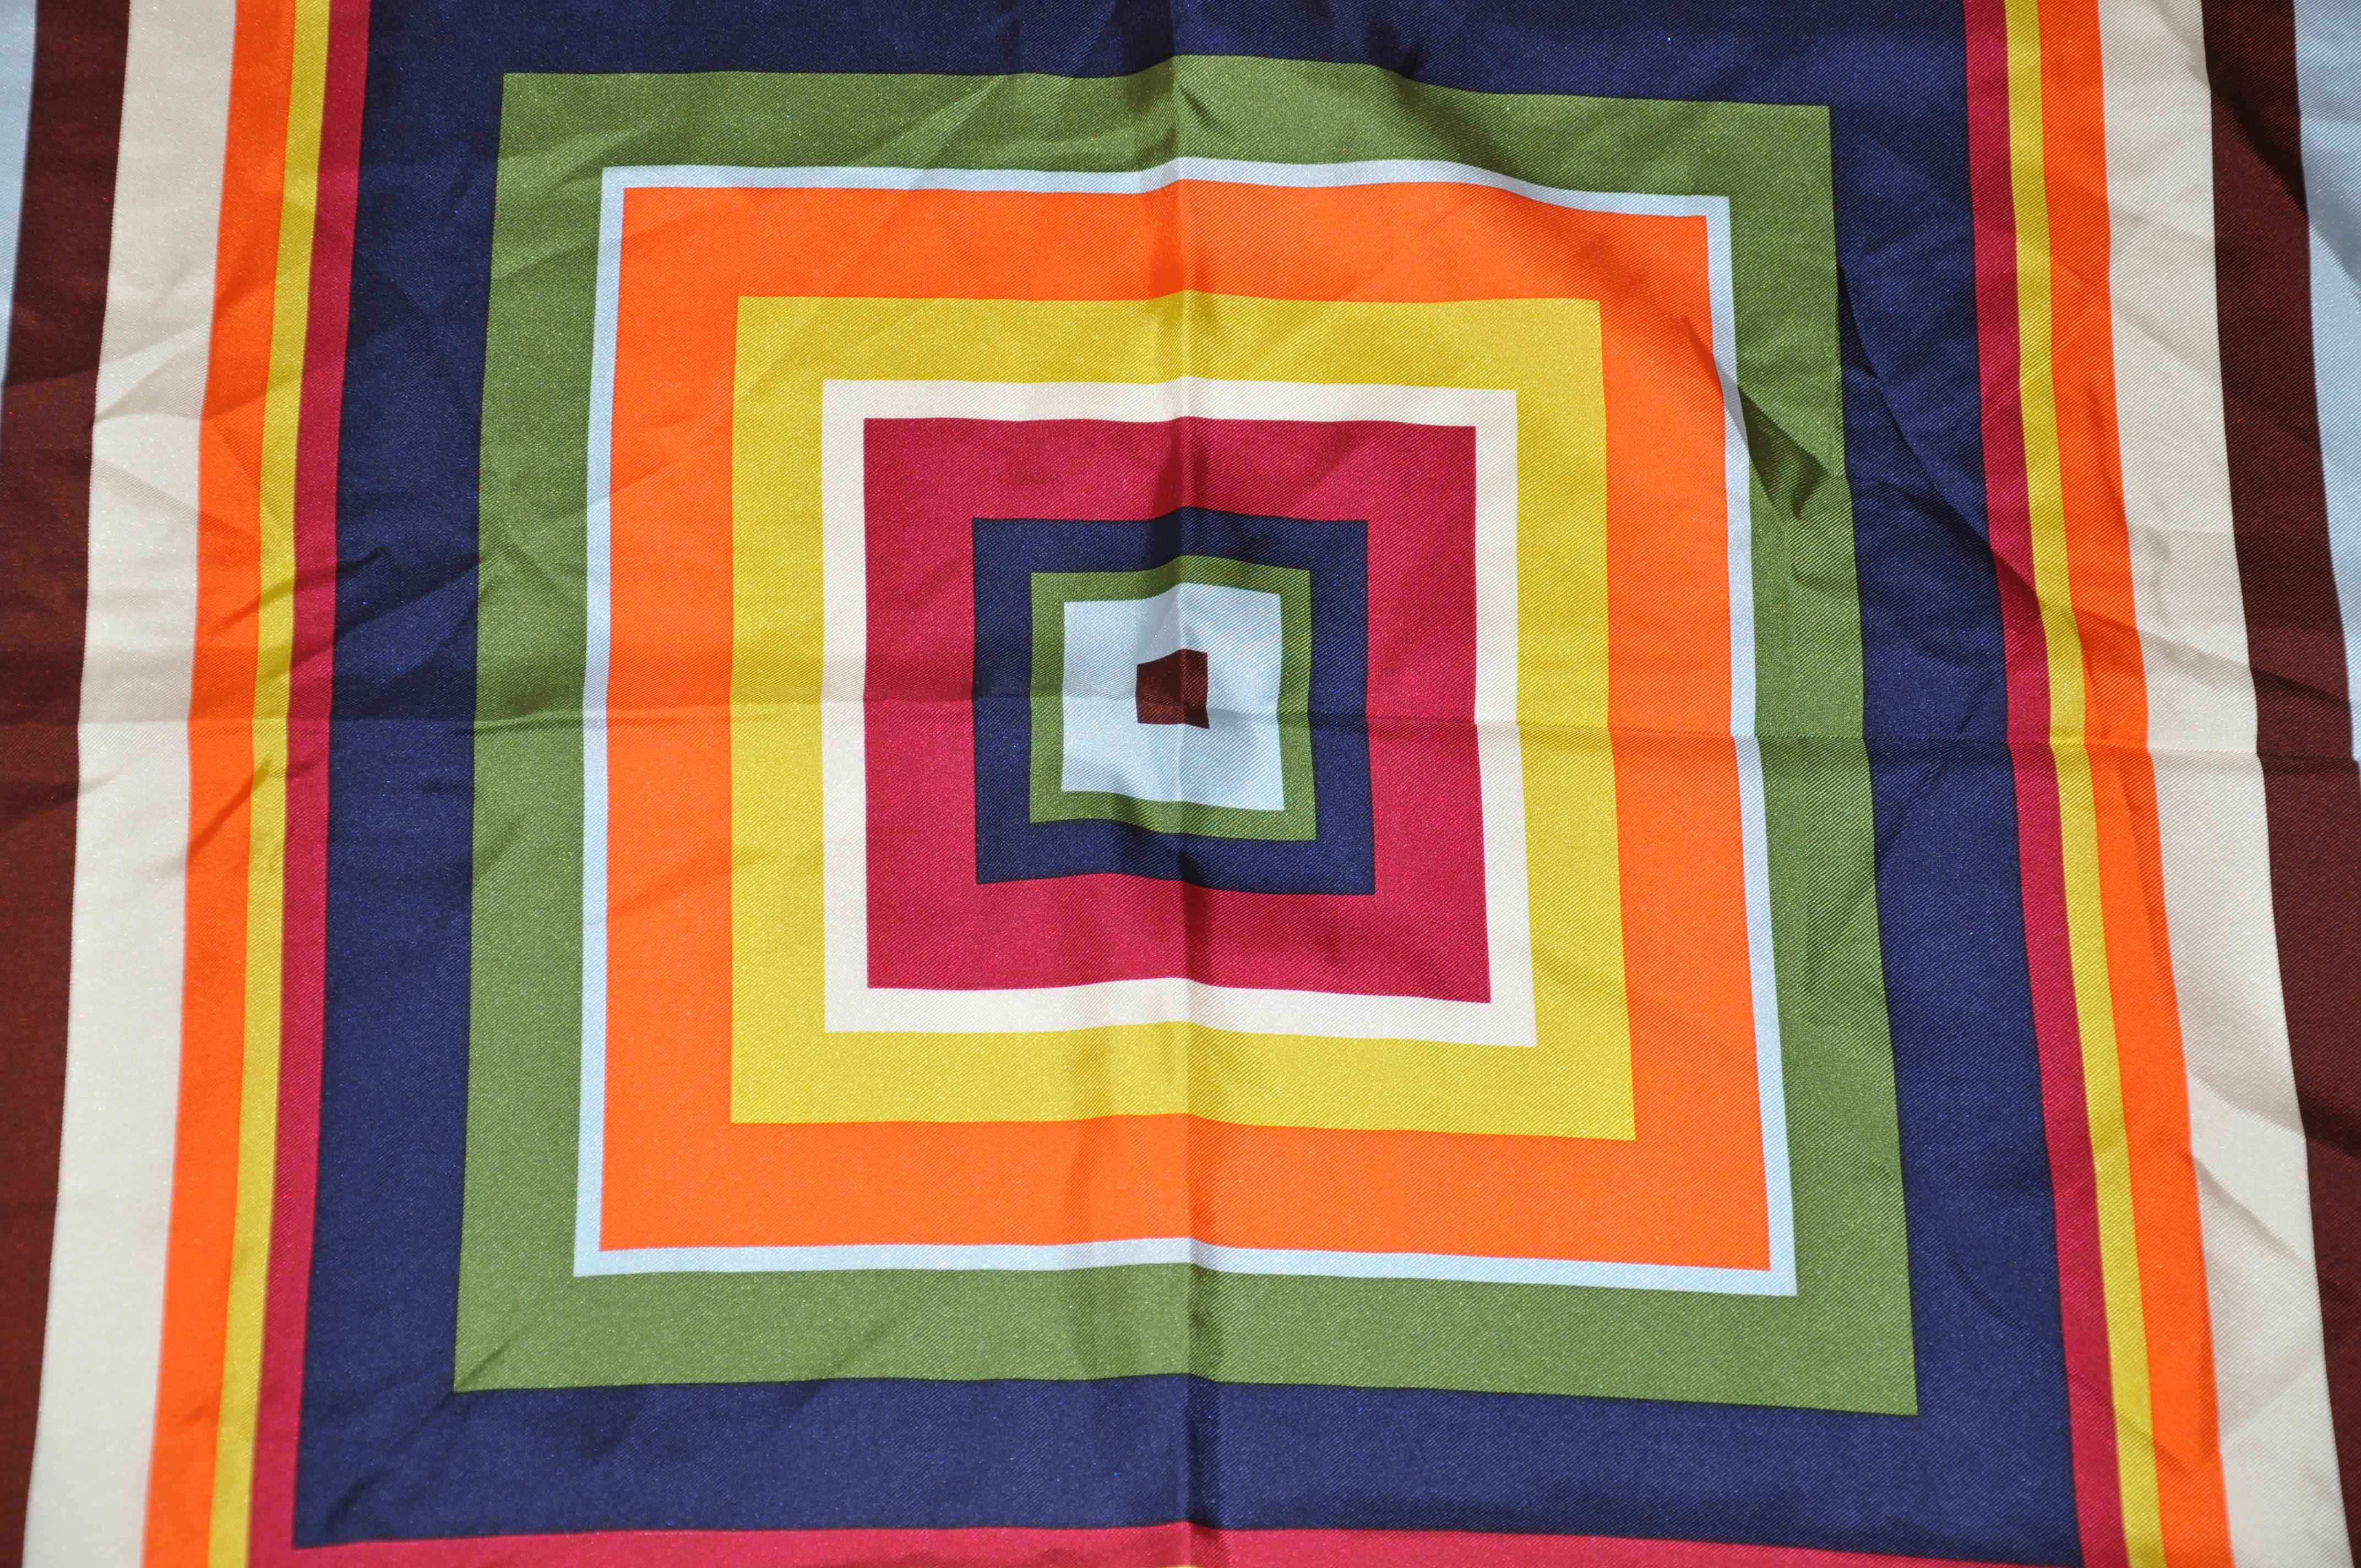 L'écharpe carrée en soie multicolore, aux couleurs vives, se chevauchant et accentuée par des bords roulés à la main, mesure 26 pouces sur 27 pouces. Fabriqué en Chine.